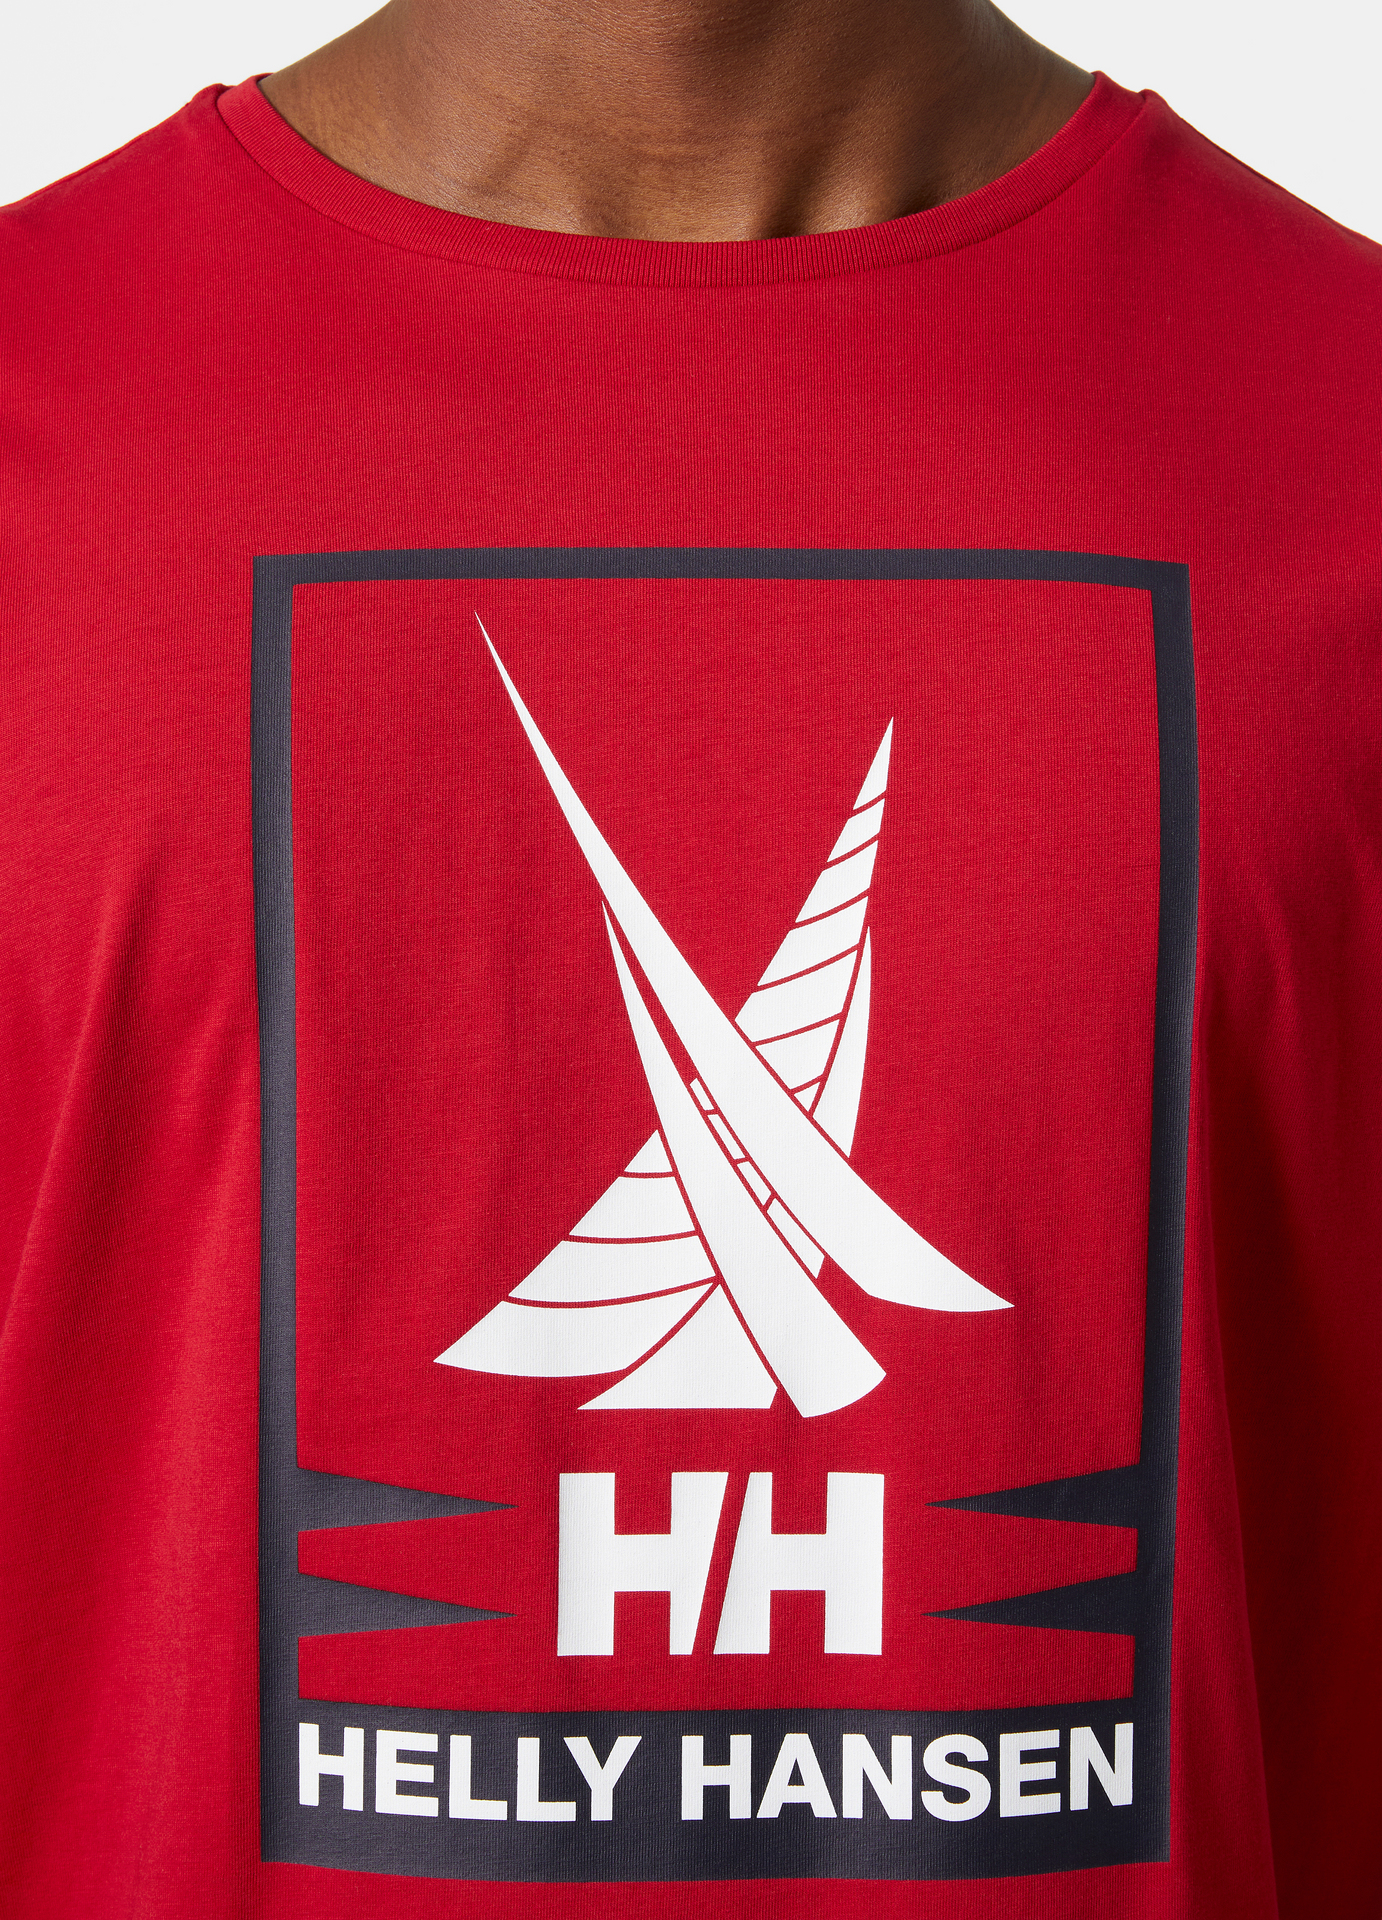 Helly Hansen Shoreline T-Shirt